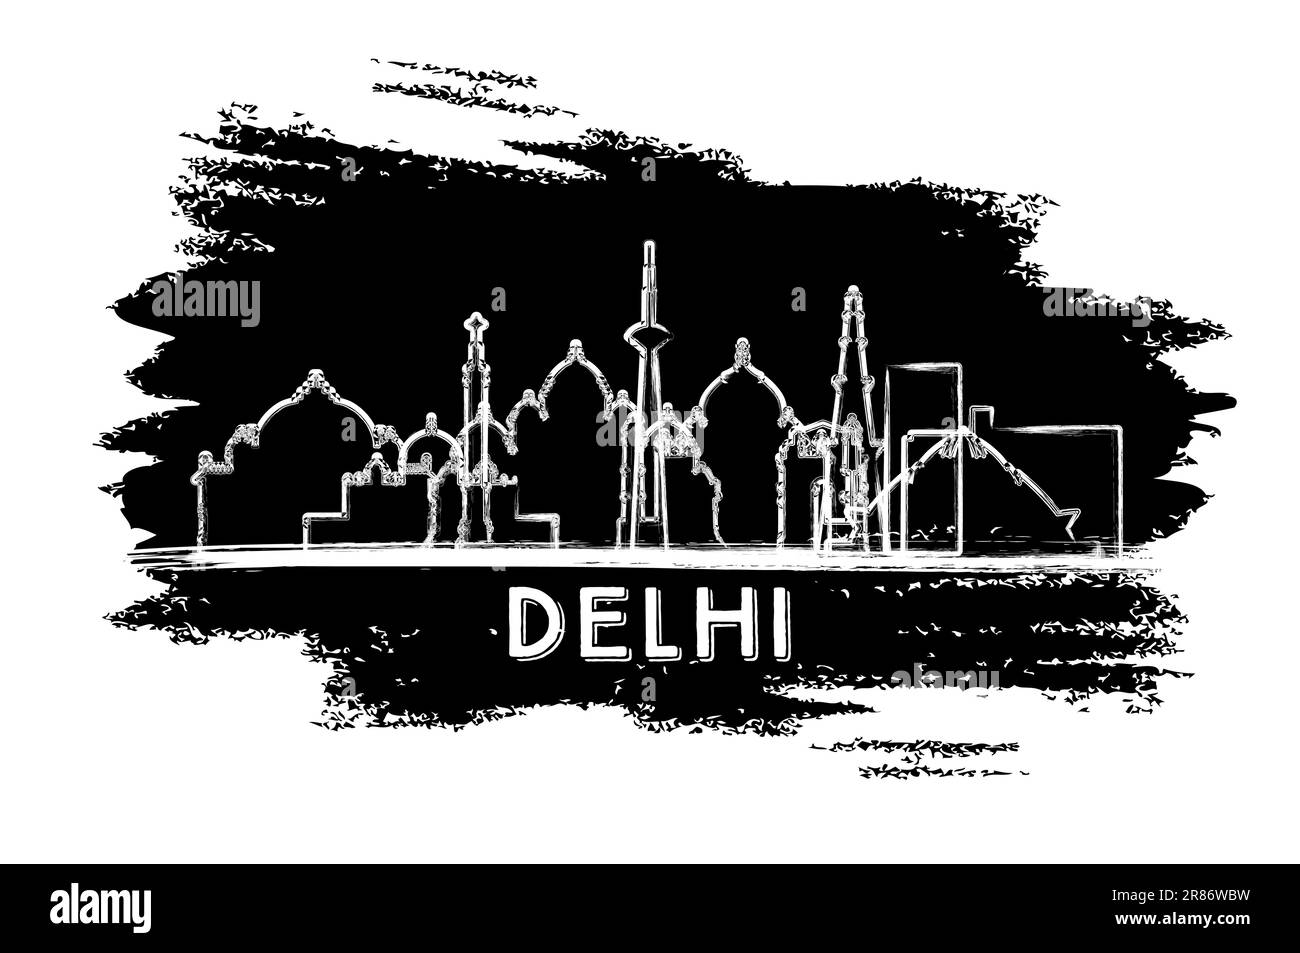 Silhouette Der Skyline Von Delhi India. Handgezeichnete Skizze. Business Travel and Tourism Concept mit moderner Architektur. Vektordarstellung. Stock Vektor